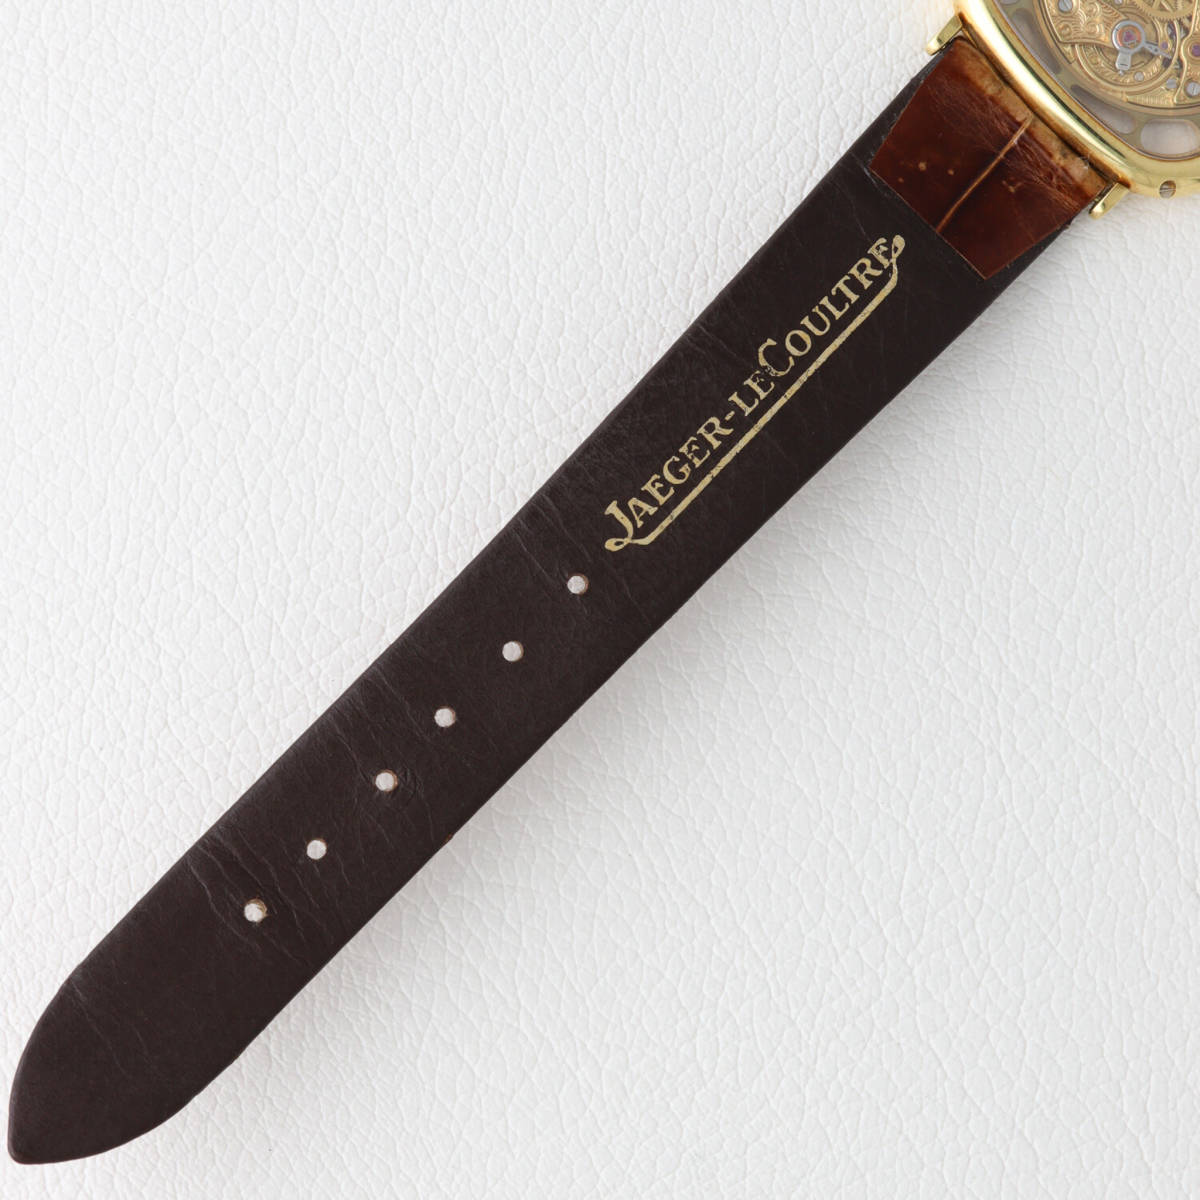 [ архив есть ] Jaeger-Le Coultre каркас Vogue Skelton 141.007.1 Vintage механический завод античный мужские наручные часы 